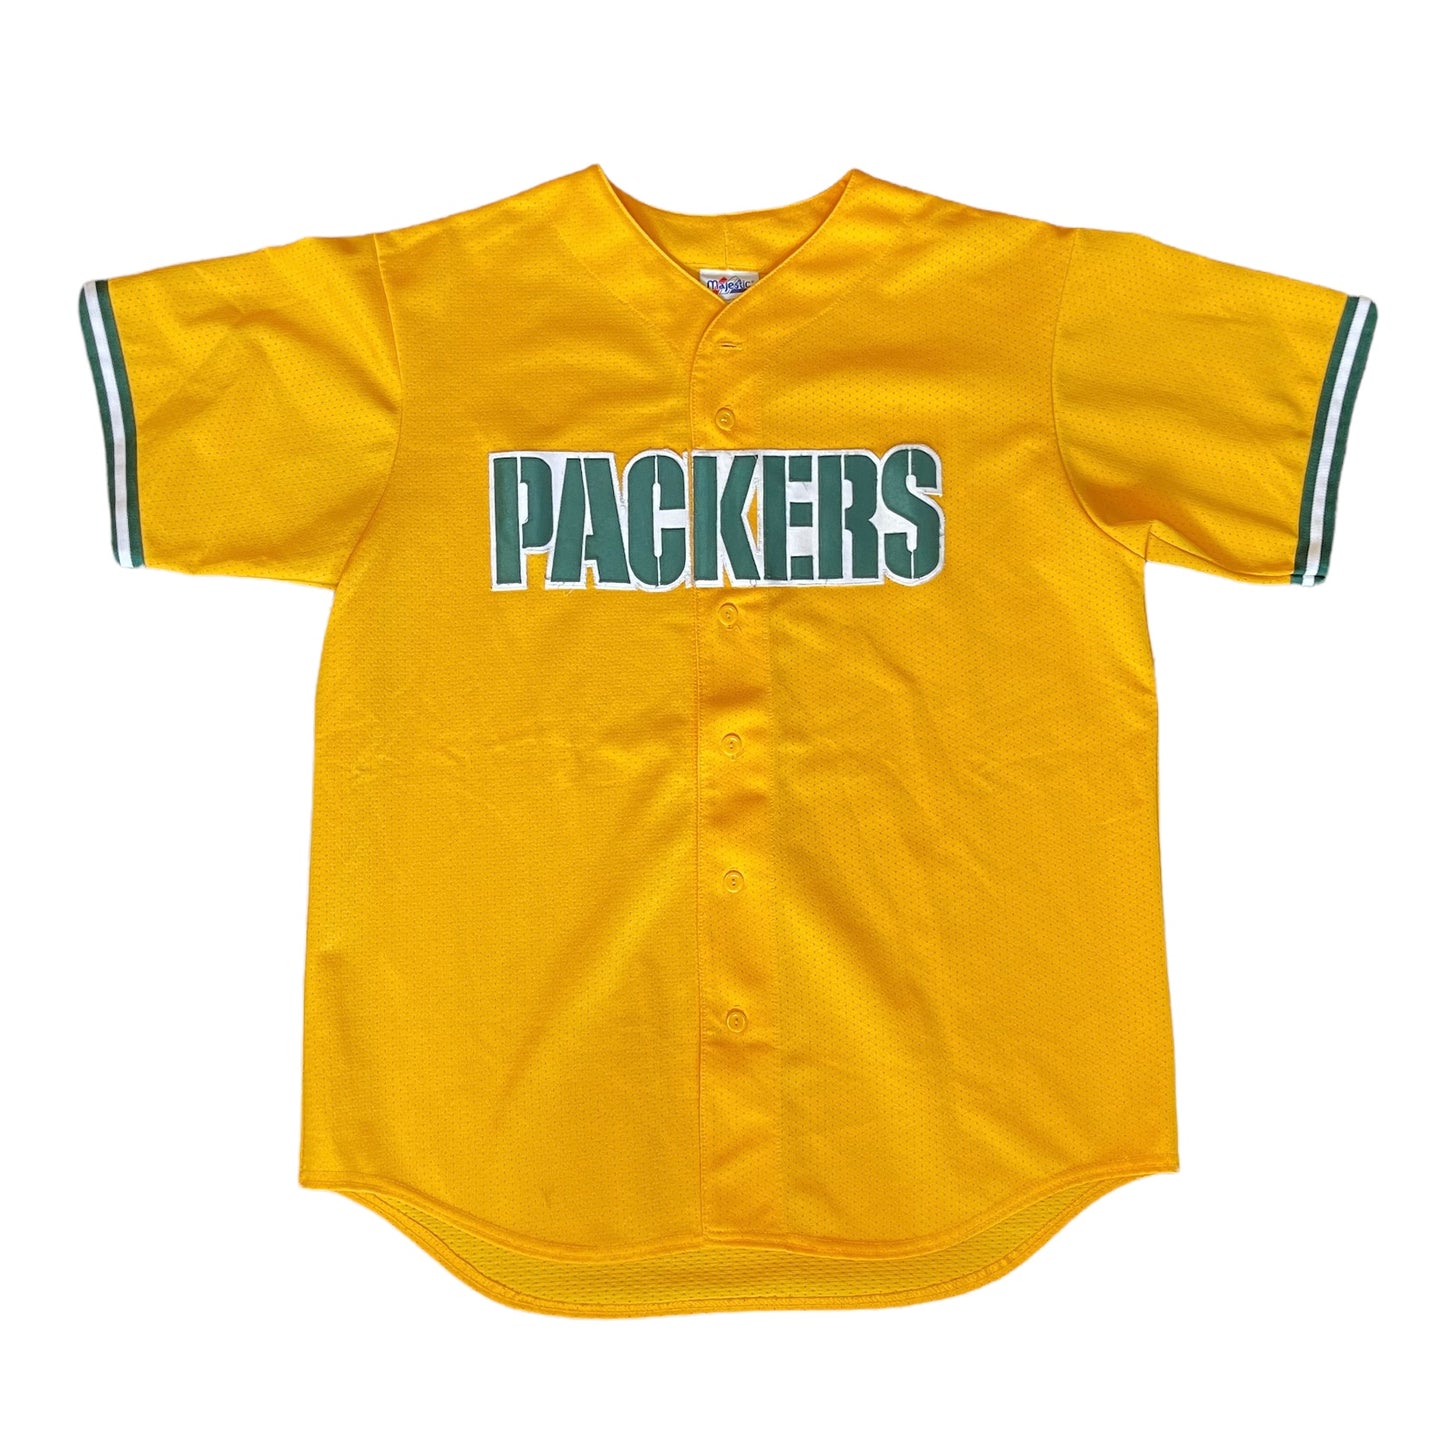 Packers Baseball Style Jersey